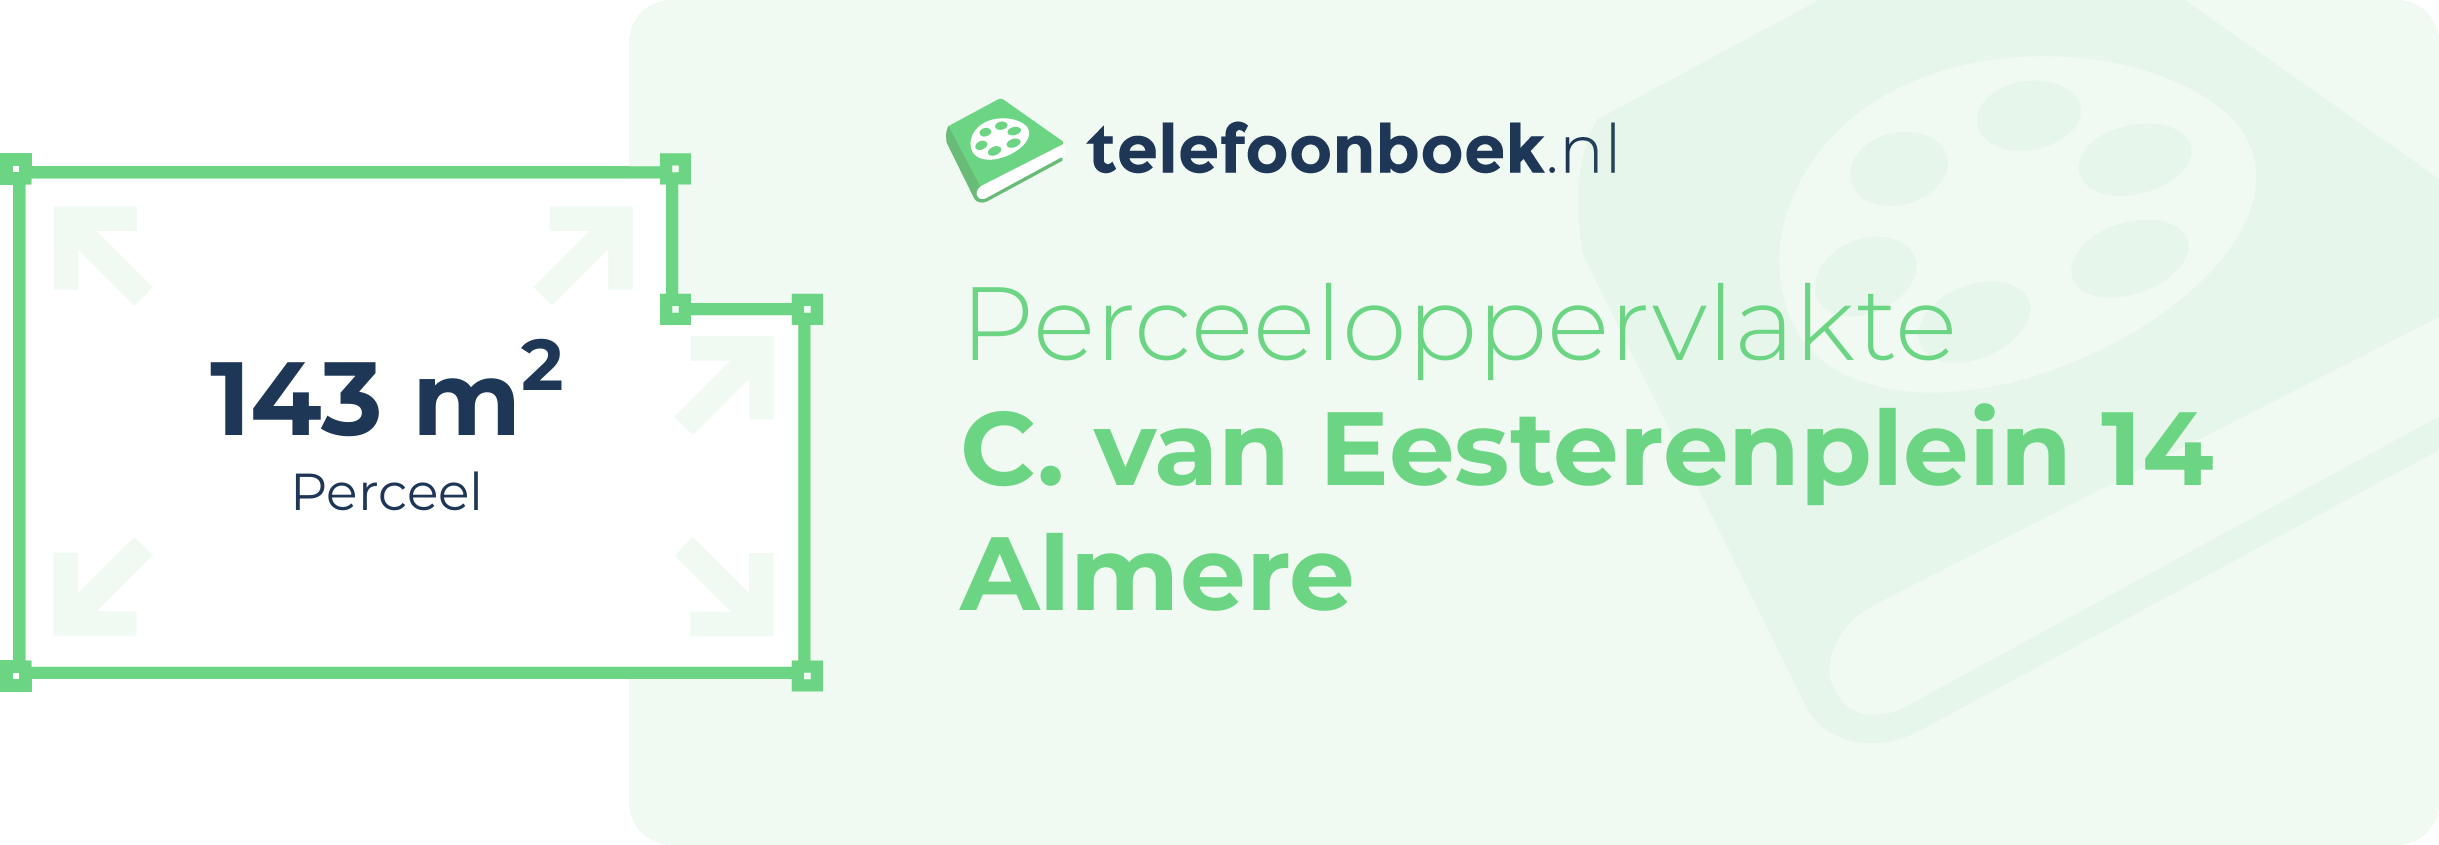 Perceeloppervlakte C. Van Eesterenplein 14 Almere